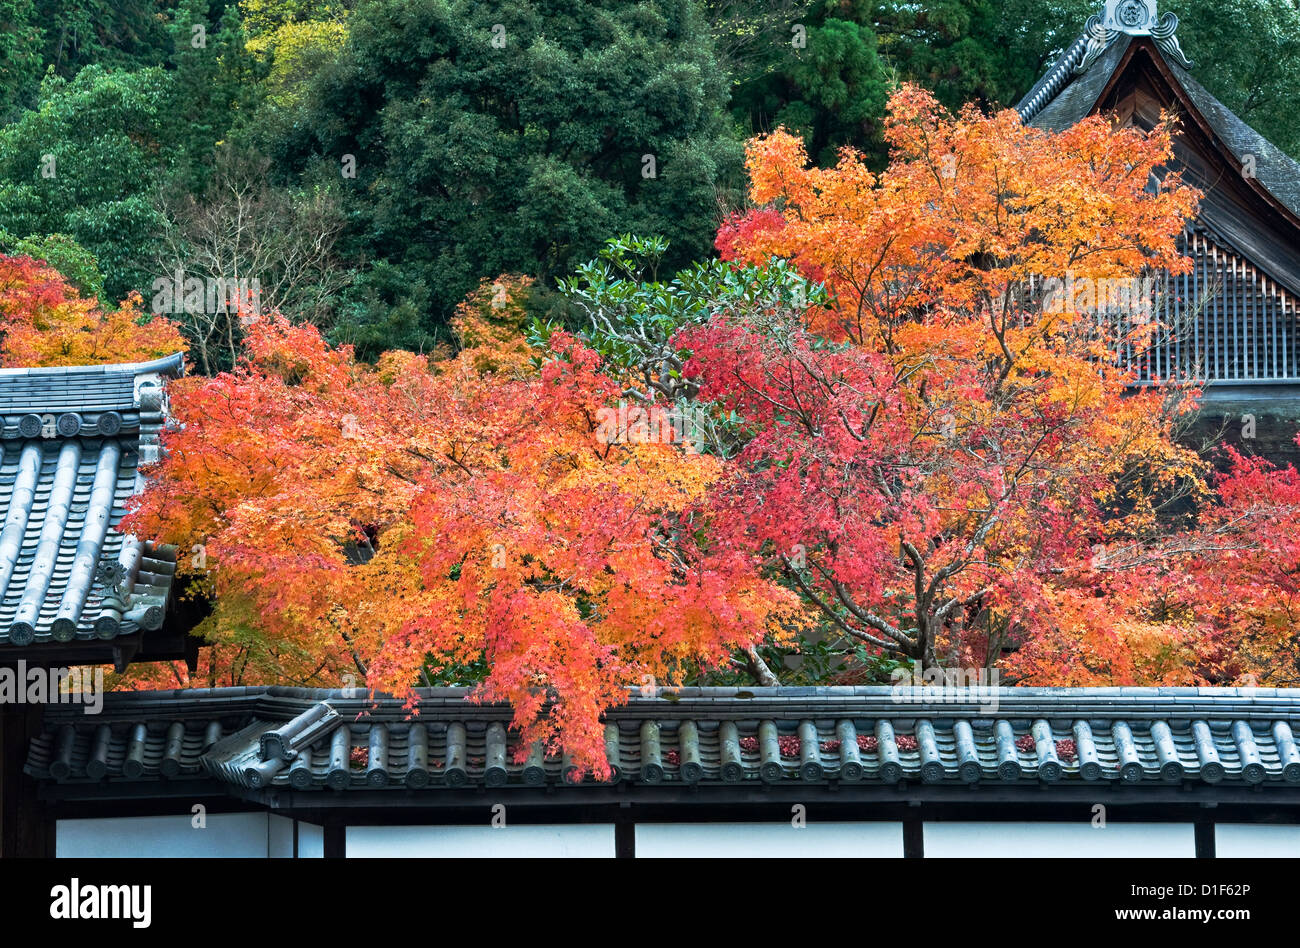 Feuillage d'automne aux couleurs vives surplombant les toits de tuiles d'argile traditionnelles au temple bouddhiste de Tenju-an, Nanzen-ji, Kyoto, Japon Banque D'Images